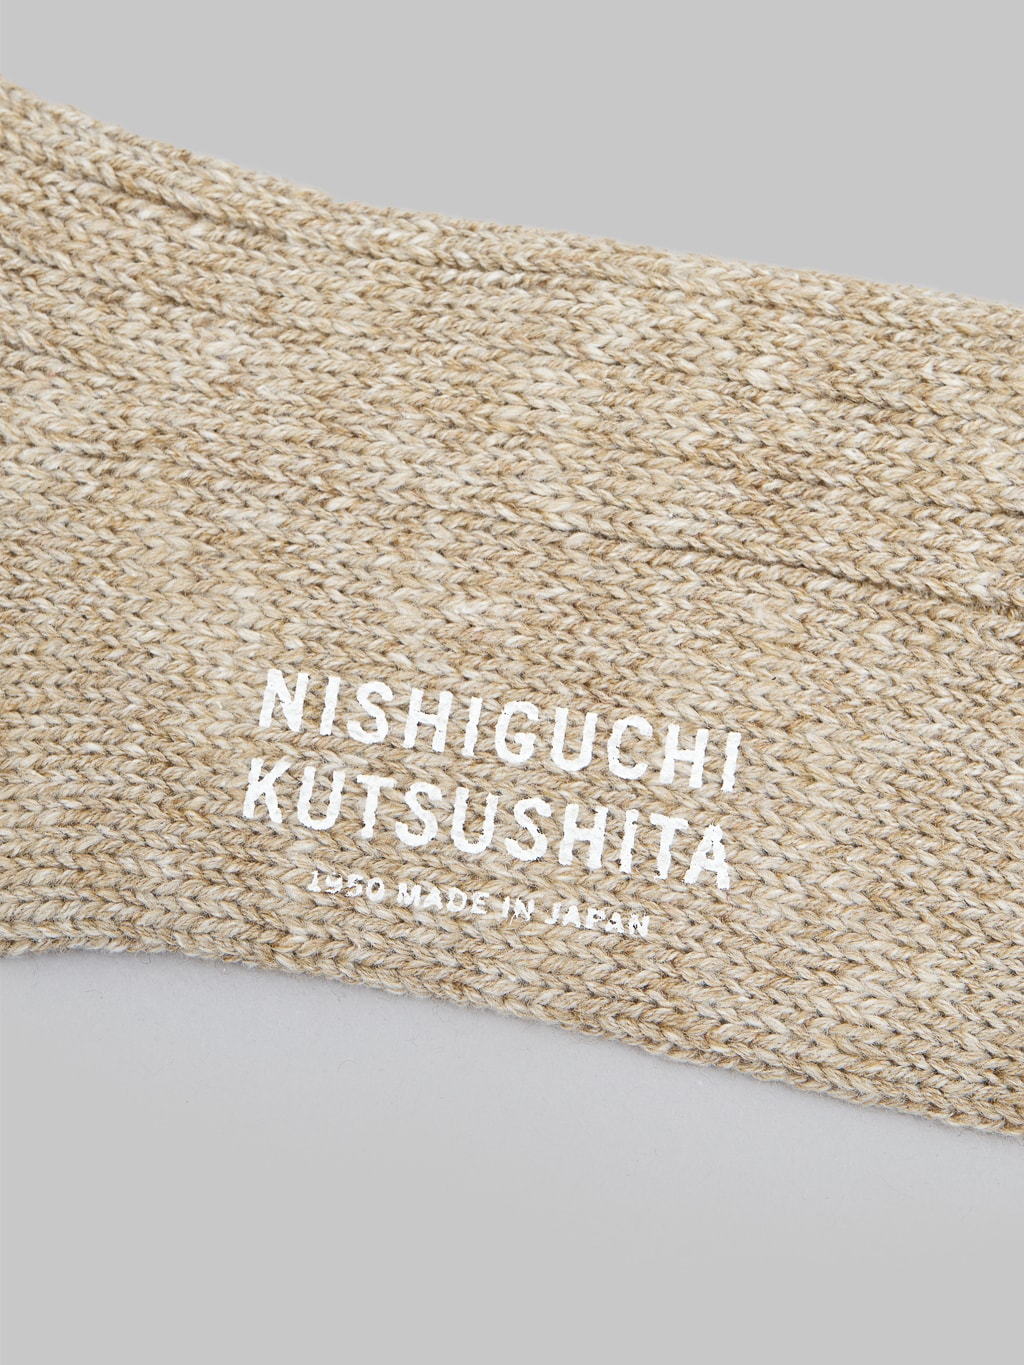 Nishiguchi Kutsushita Wool Cotton Slab Socks Red